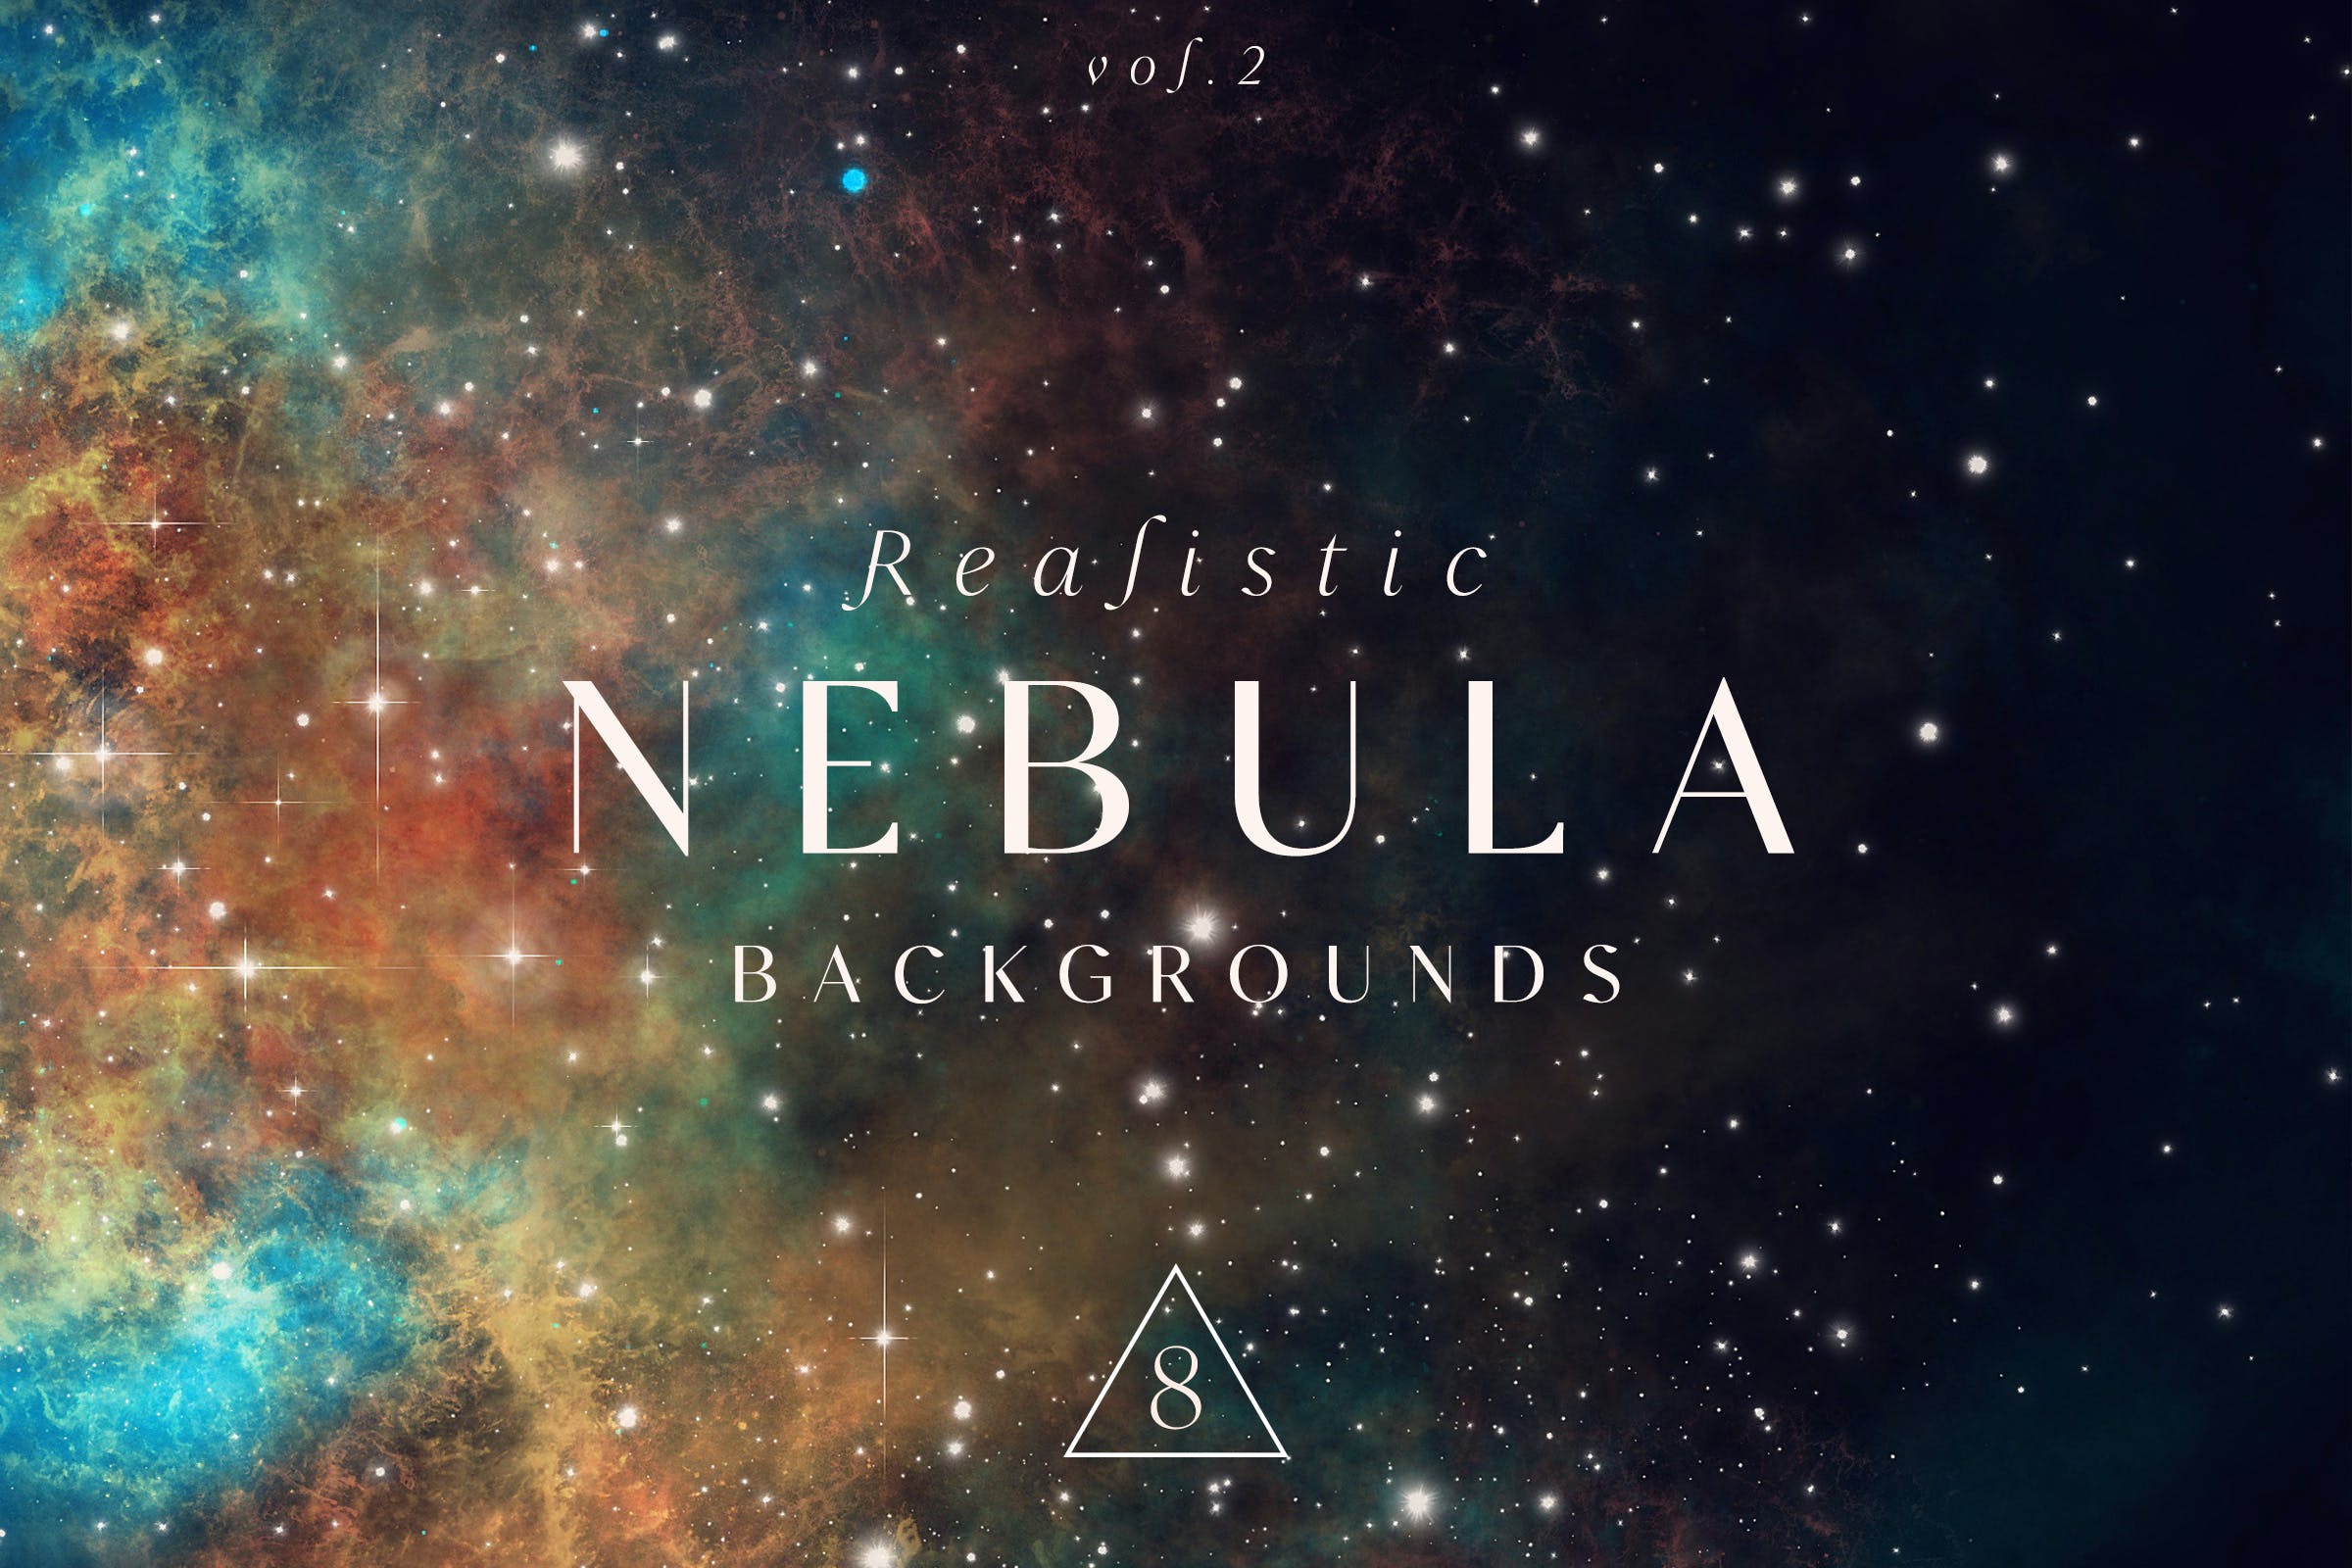 逼真星云太空背景v2 Realistic Nebula Backgrounds Vol.2 图片素材 第1张